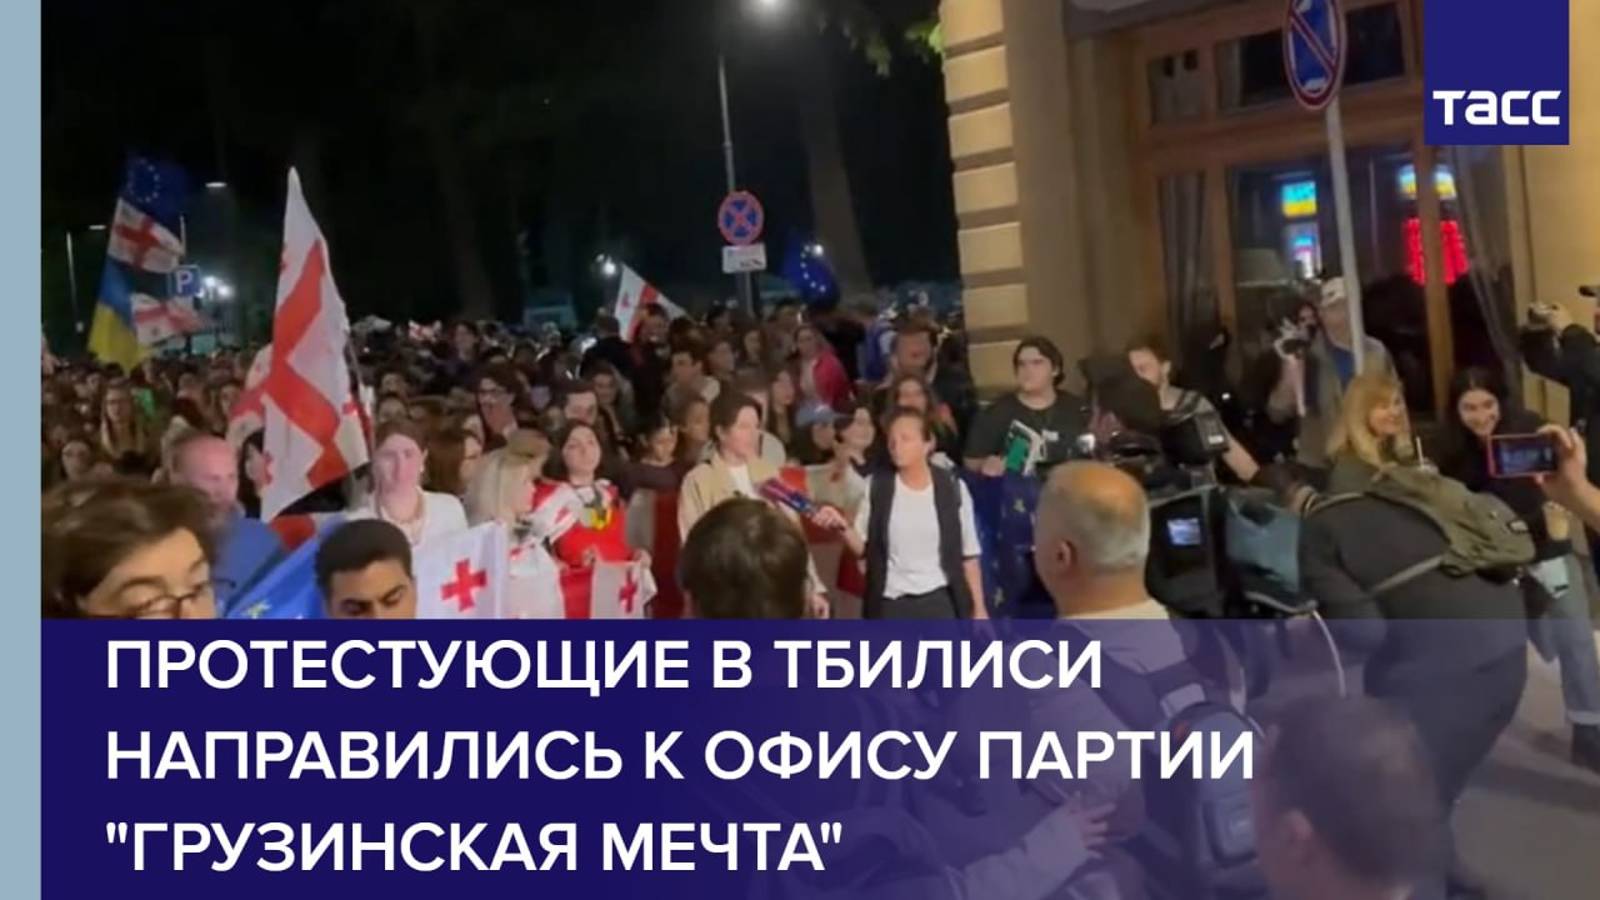 Протестующие в Тбилиси направились к офису партии "Грузинская мечта"